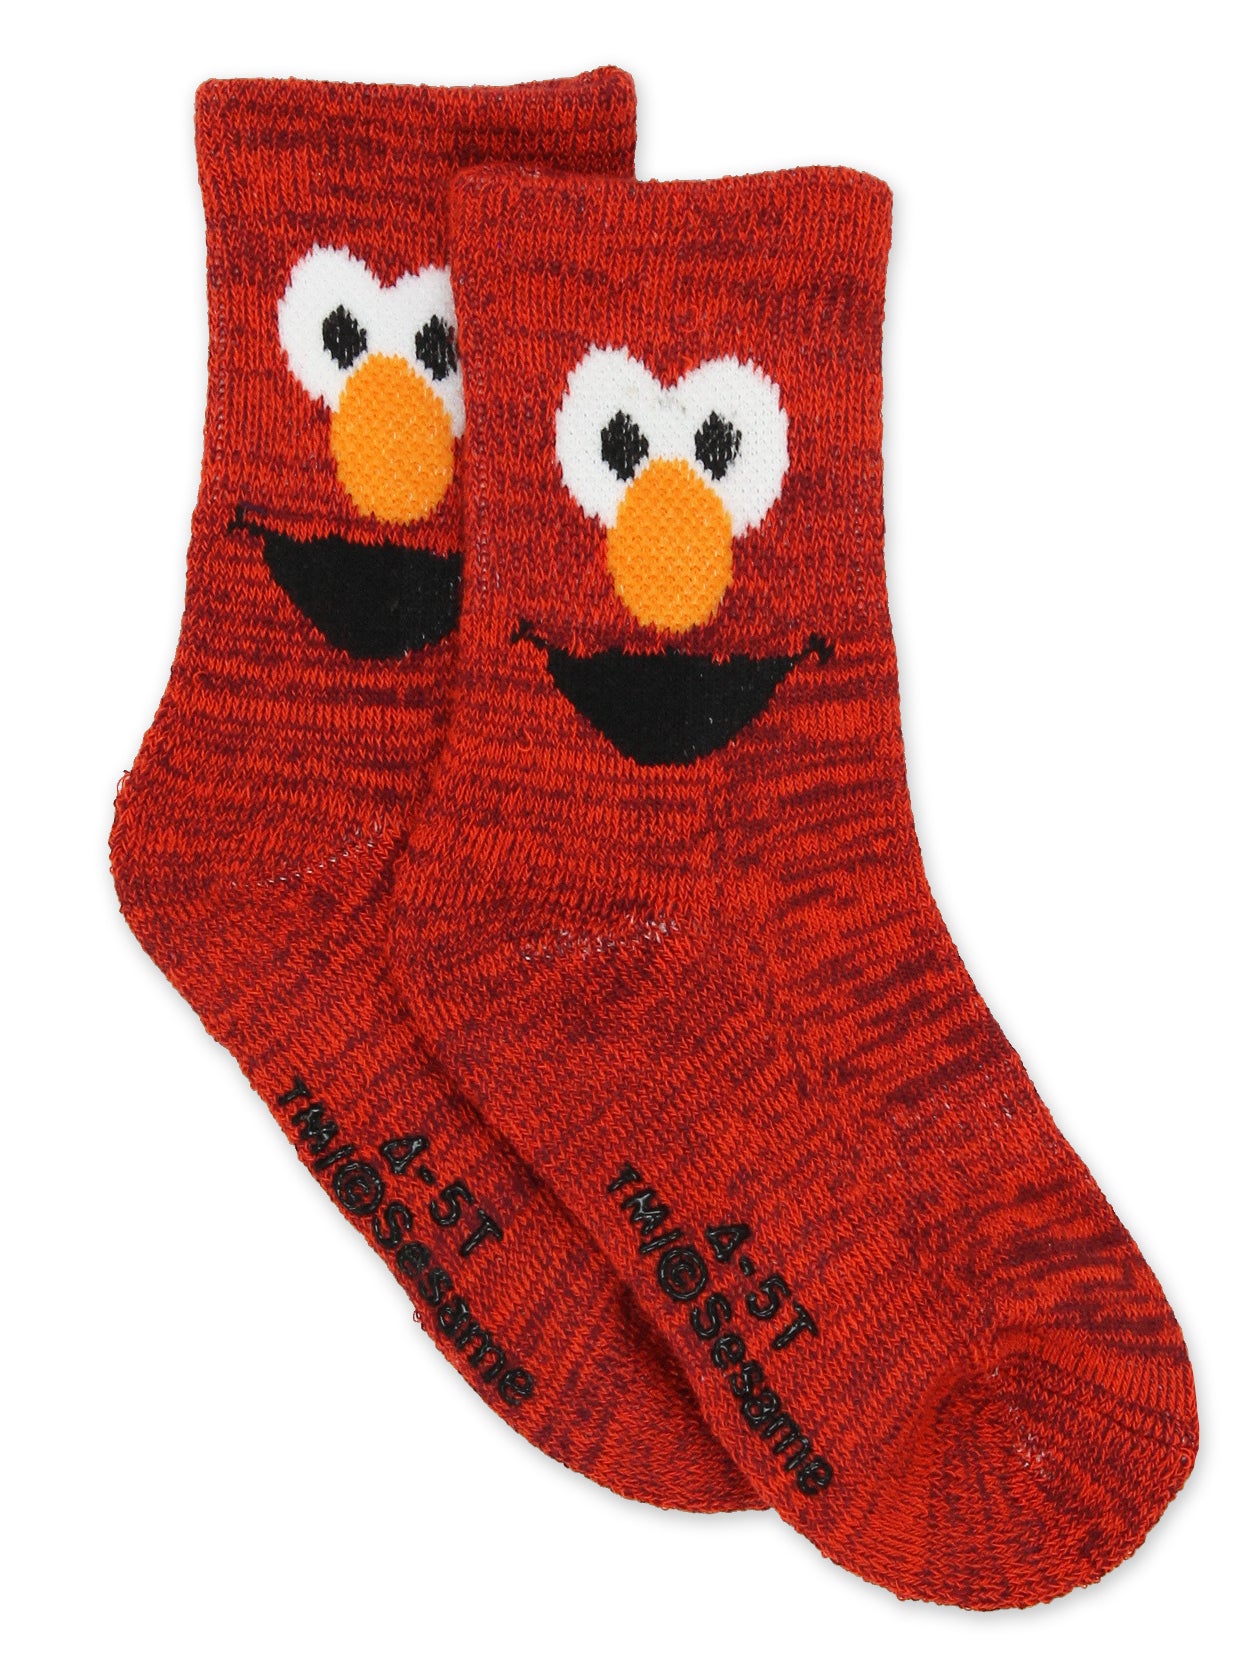 Sesame Street Elmo Baby Toddler Boys Girls 6 Pack Crew Socks with